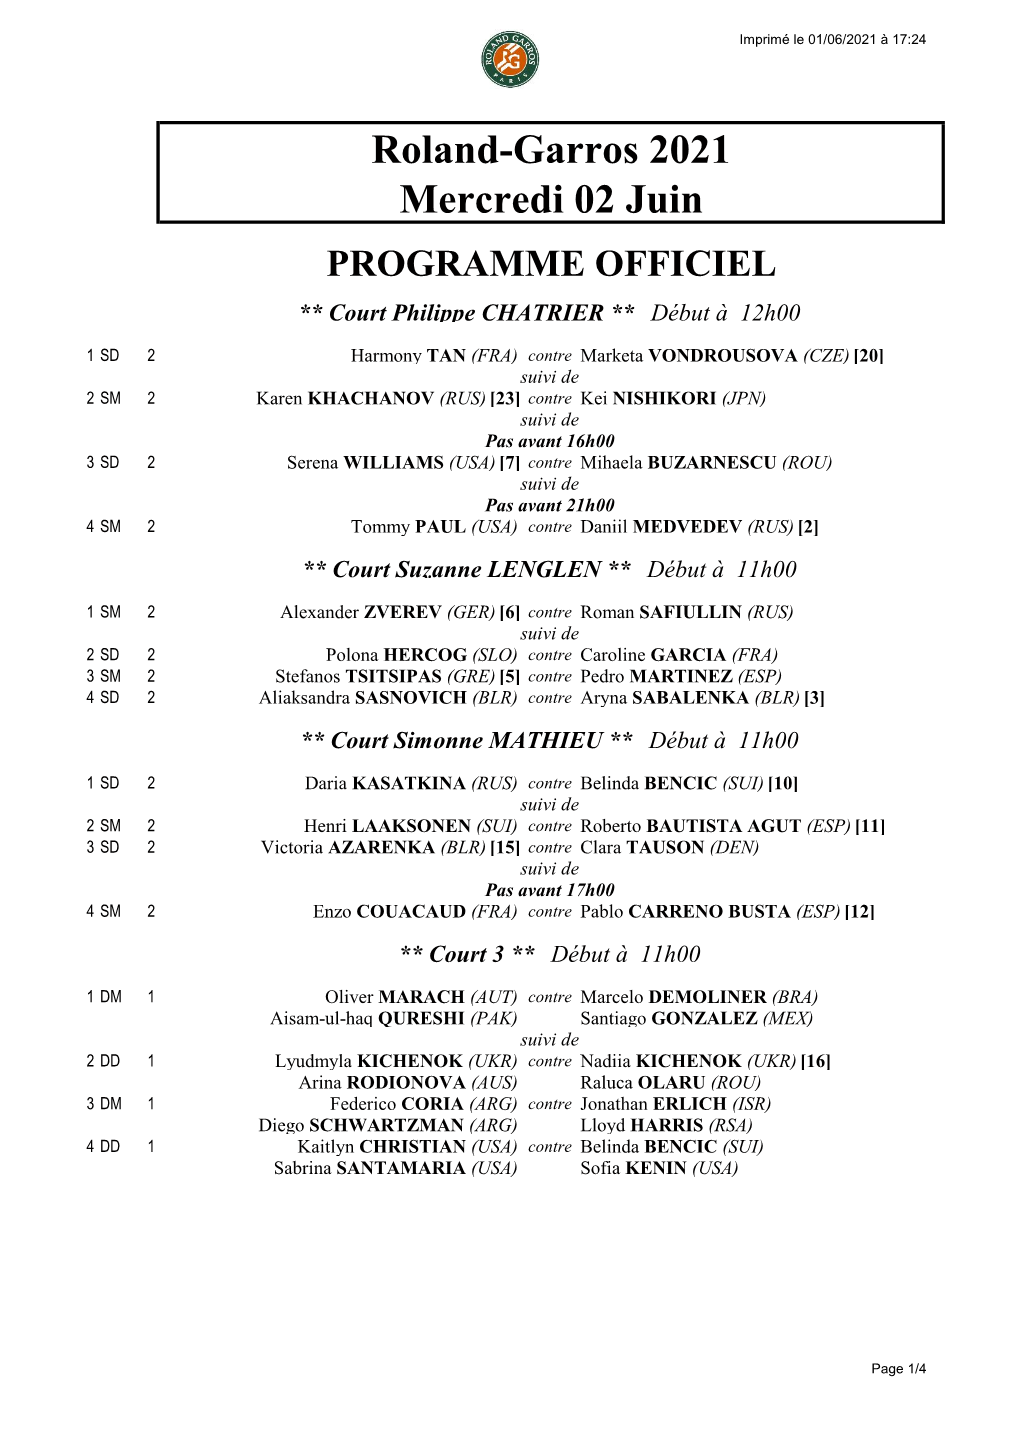 Roland-Garros 2021 Mercredi 02 Juin PROGRAMME OFFICIEL ** Court Philippe CHATRIER ** Début À 12H00